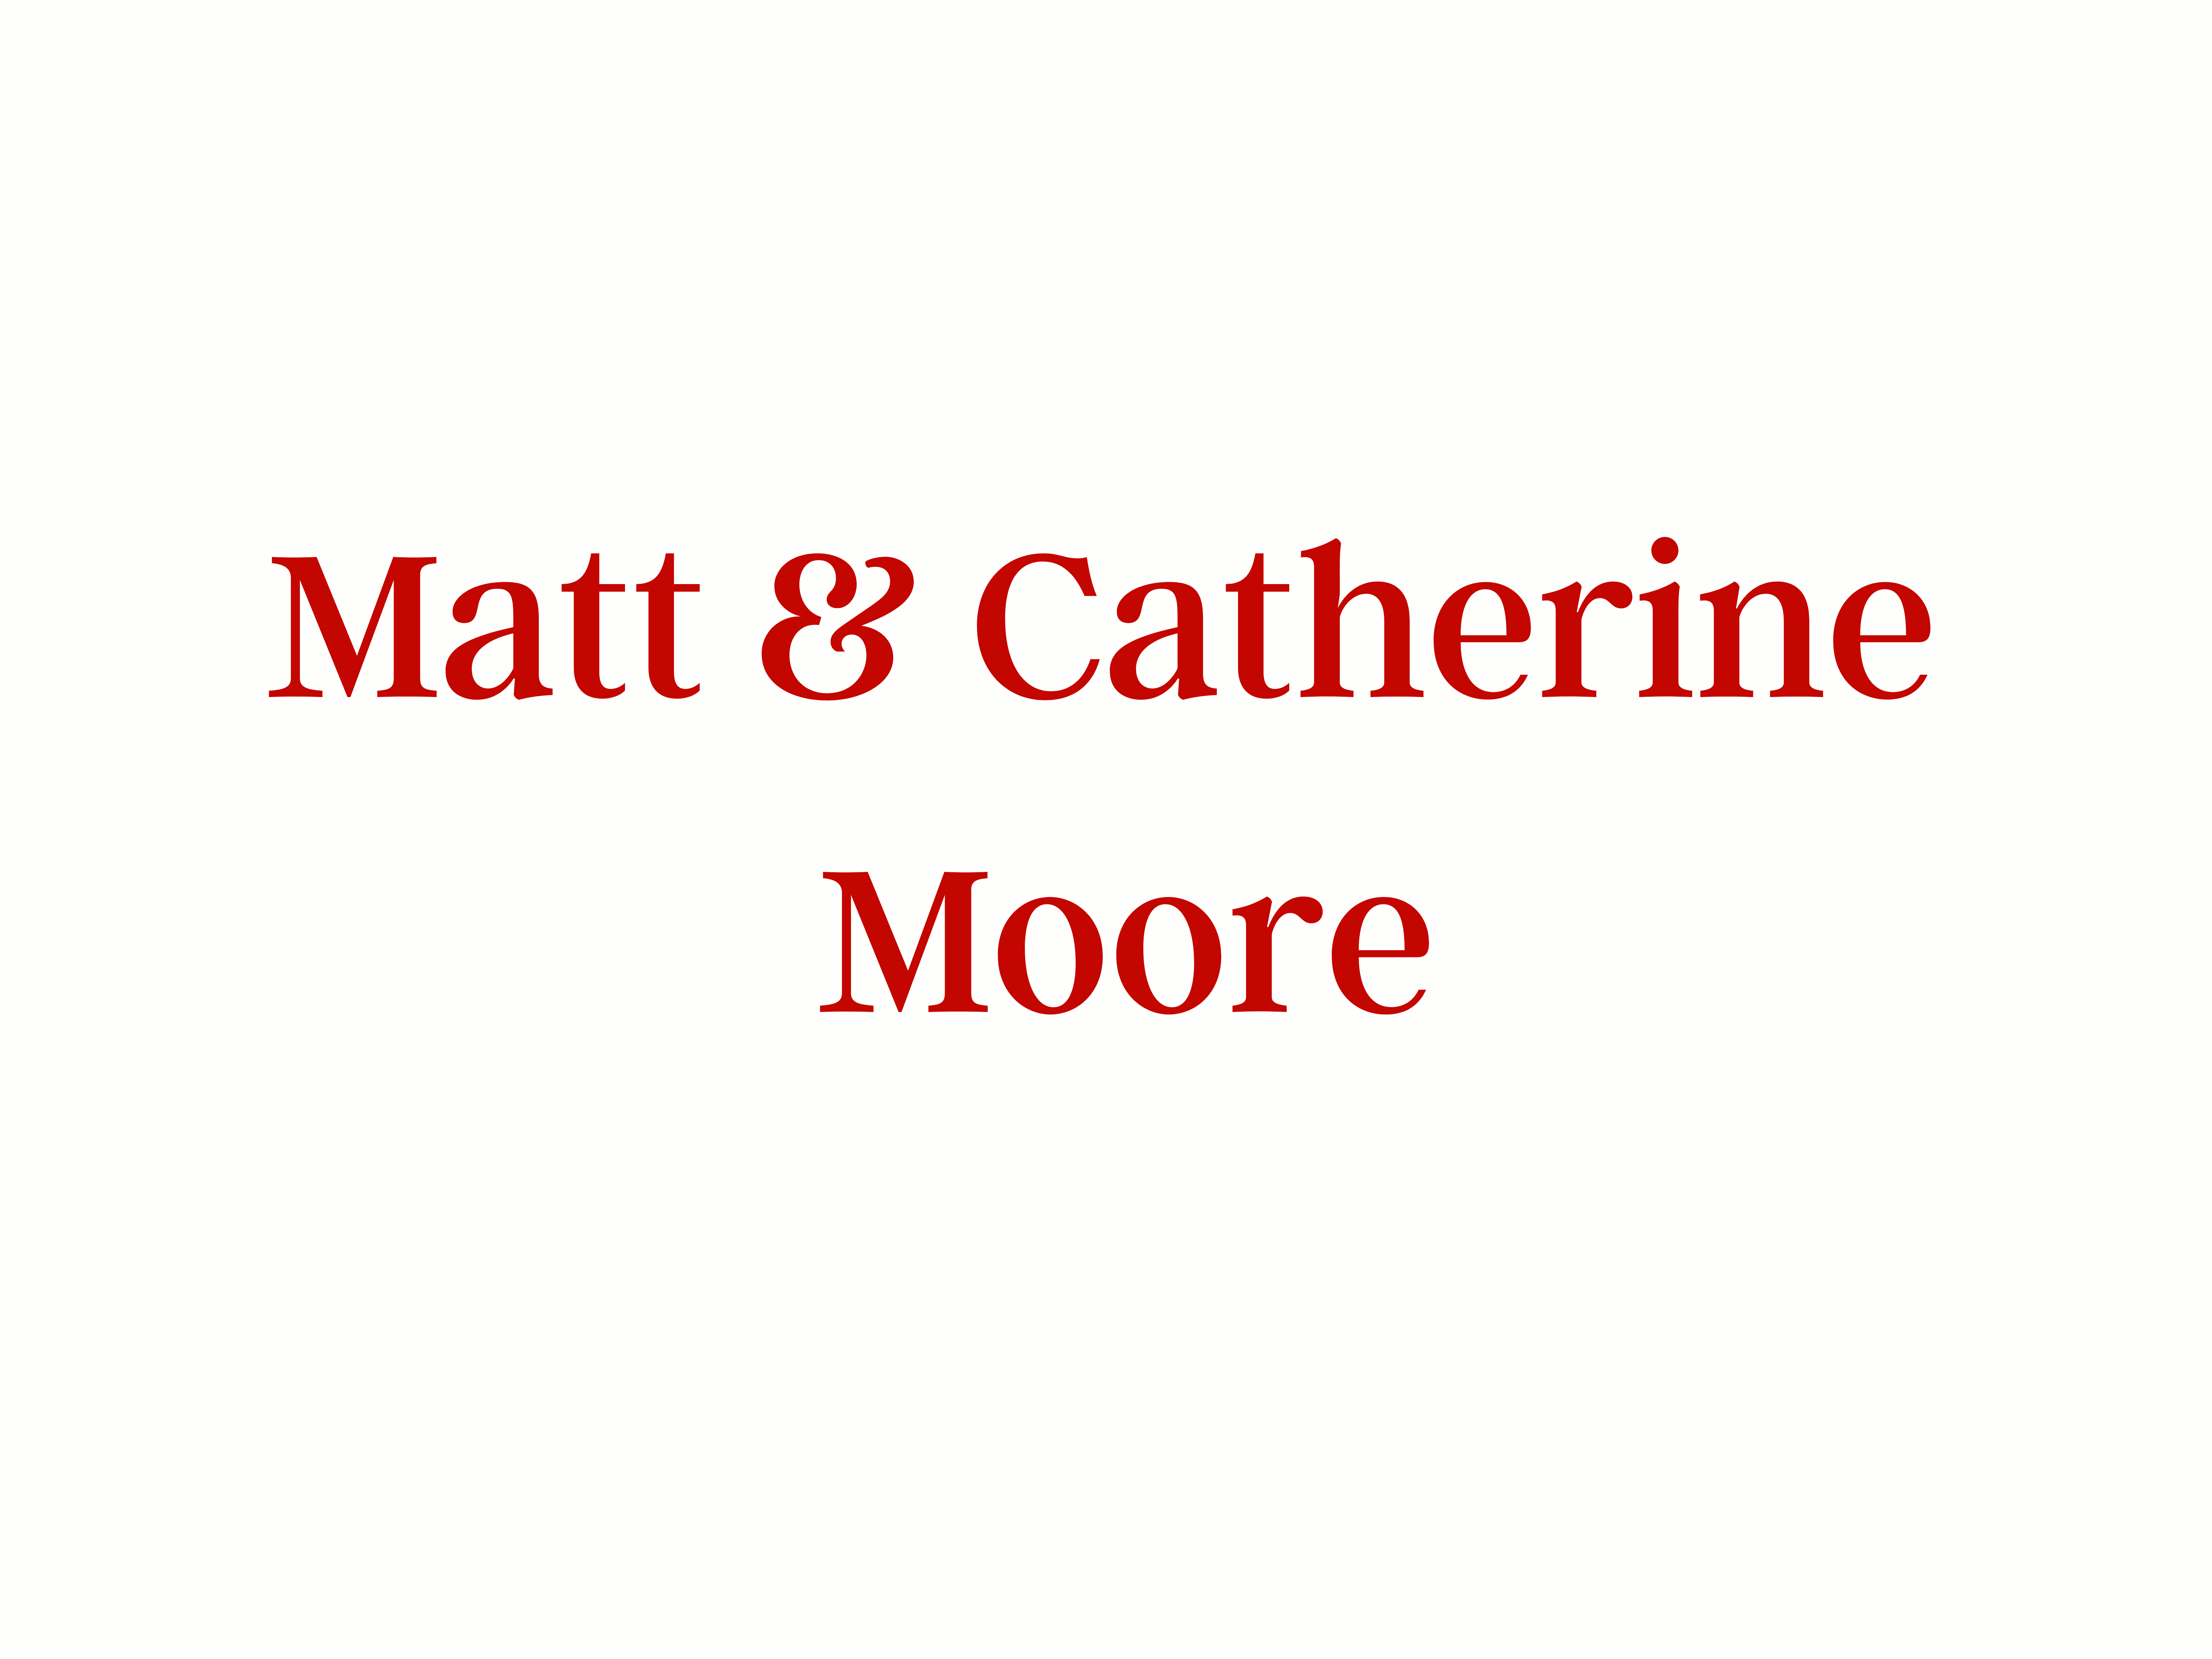 Matt & Catherine Moore